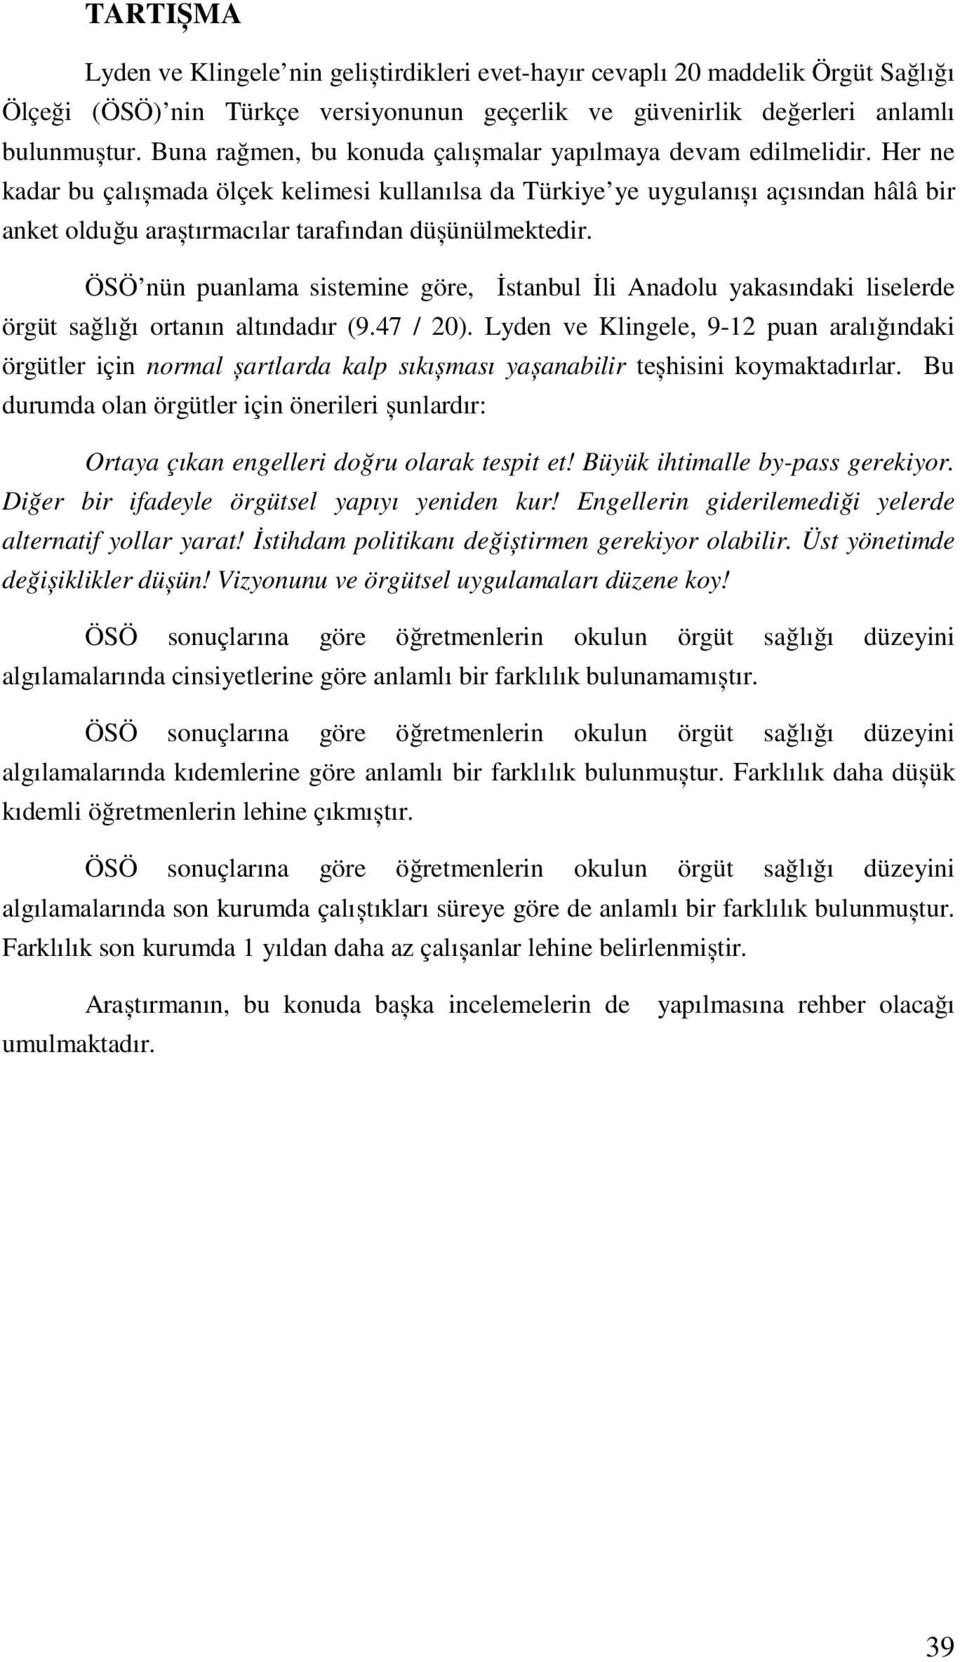 Her ne kadar bu çalıșmada ölçek kelimesi kullanılsa da Türkiye ye uygulanıșı açısından hâlâ bir anket olduğu araștırmacılar tarafından düșünülmektedir.